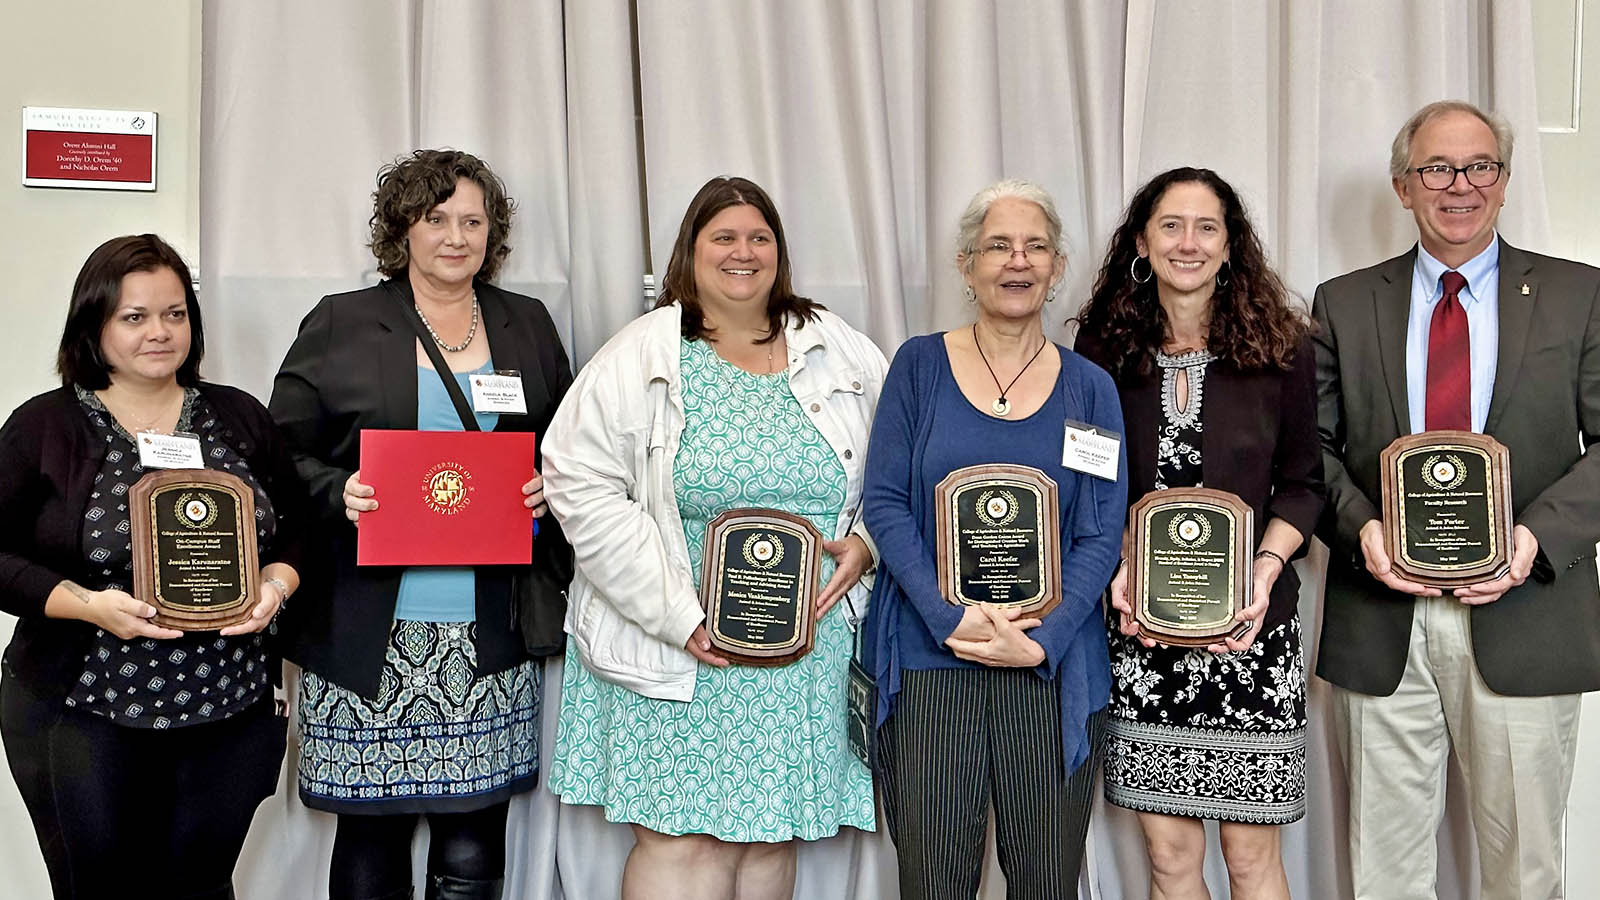 ANSC Faculty award recipients